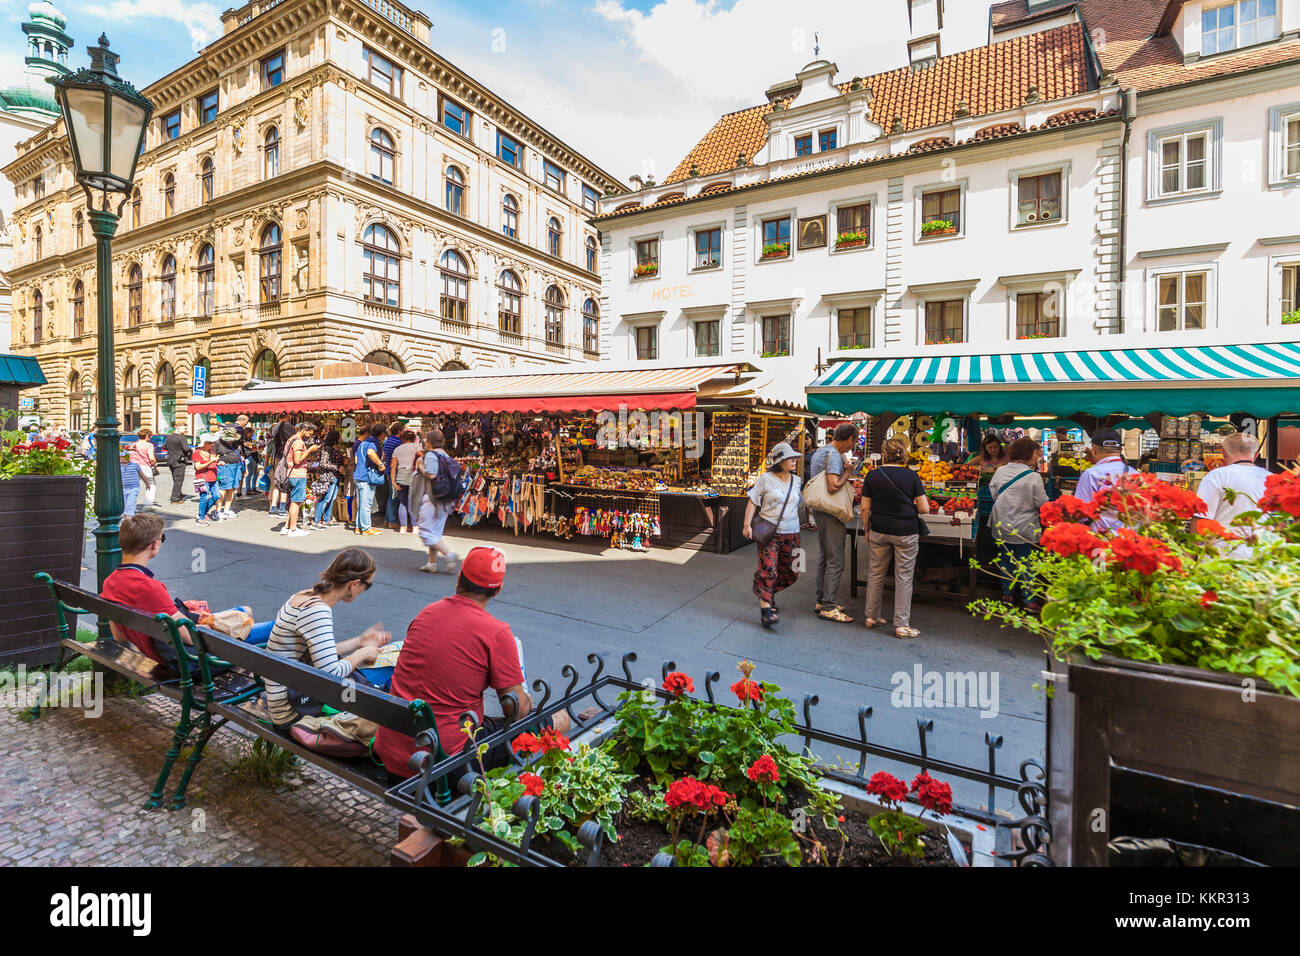 Cechia, Praga, Old Town, al mercato di piazza havel, havelsky trh, bancarelle e un mercato di frutta e verdura, negozio souvenir Foto Stock